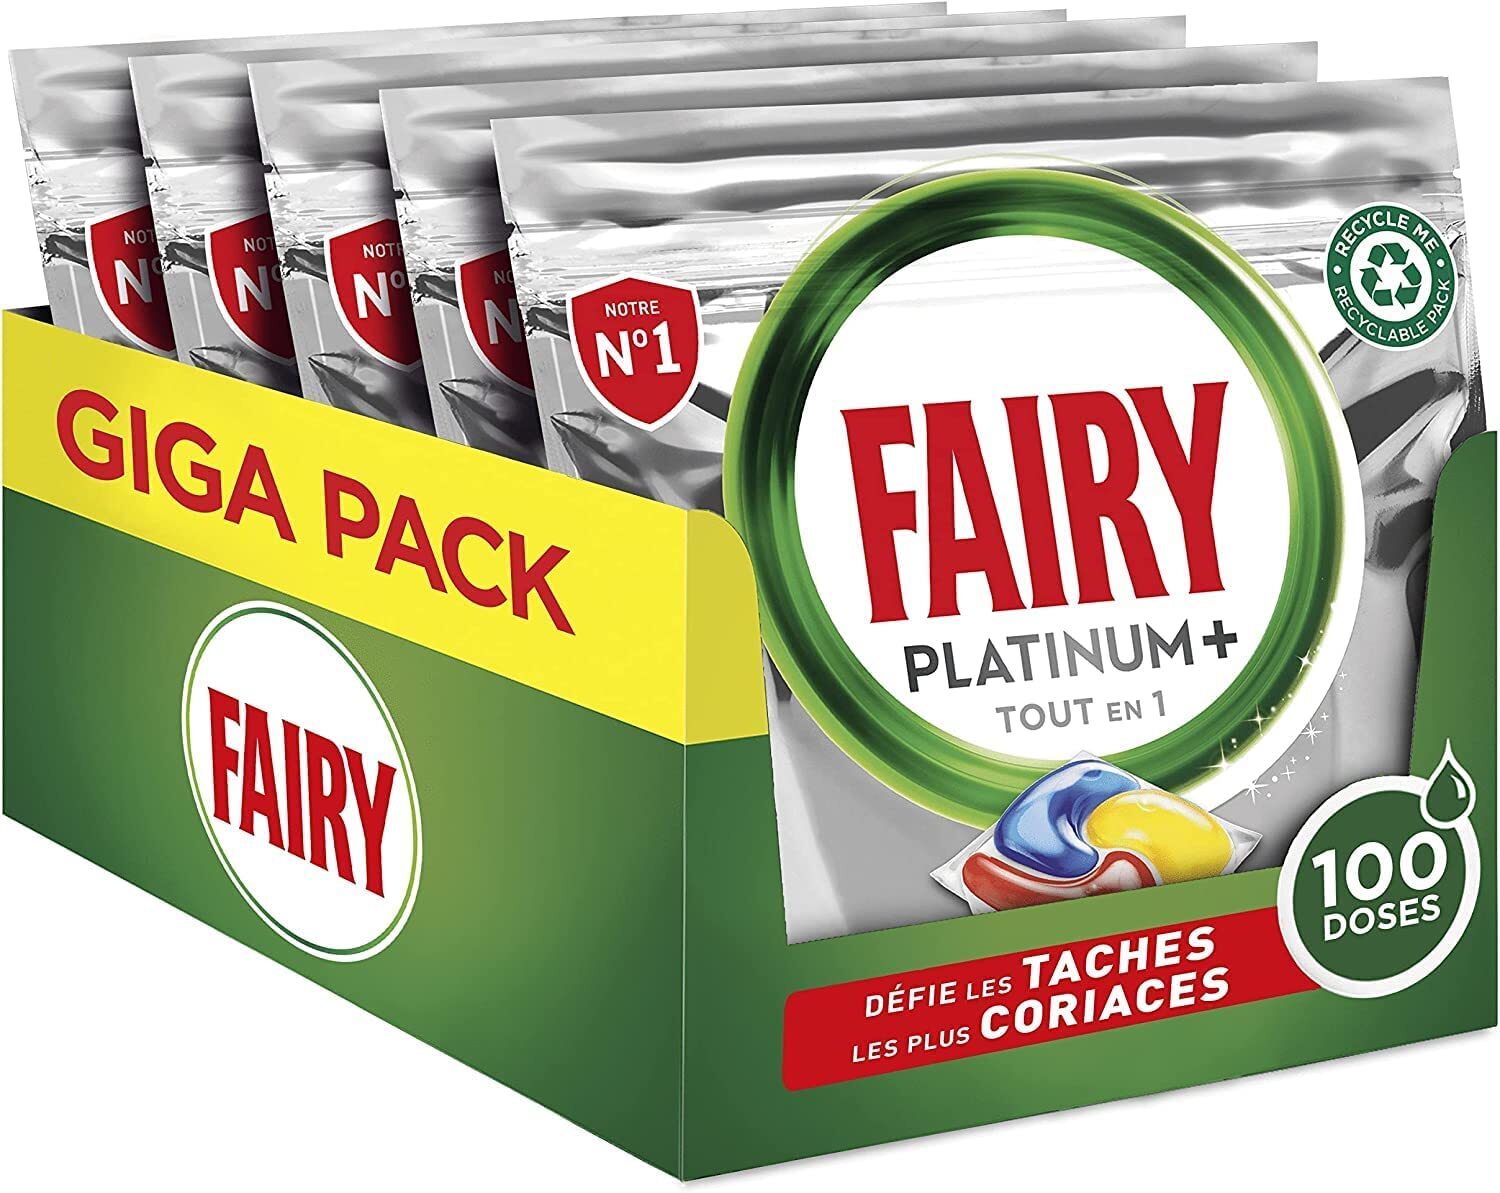 5 pack de 20 Fairy Platinium tablette de lave vaisselle